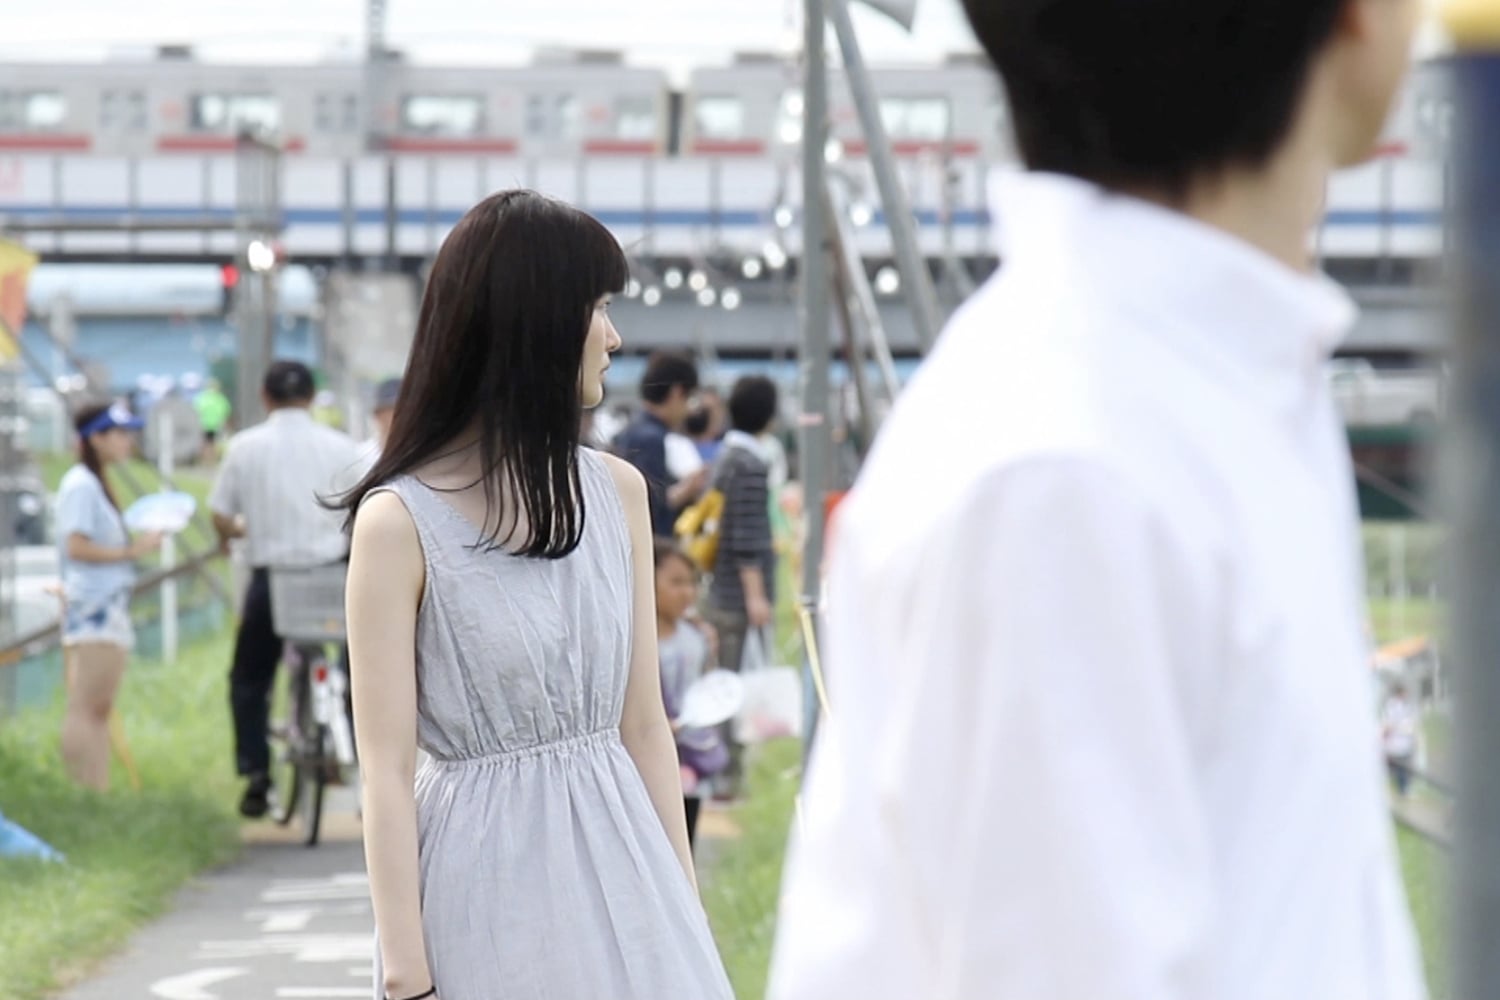 仙台短篇映画祭に「あした、かえる」が選ばれました。